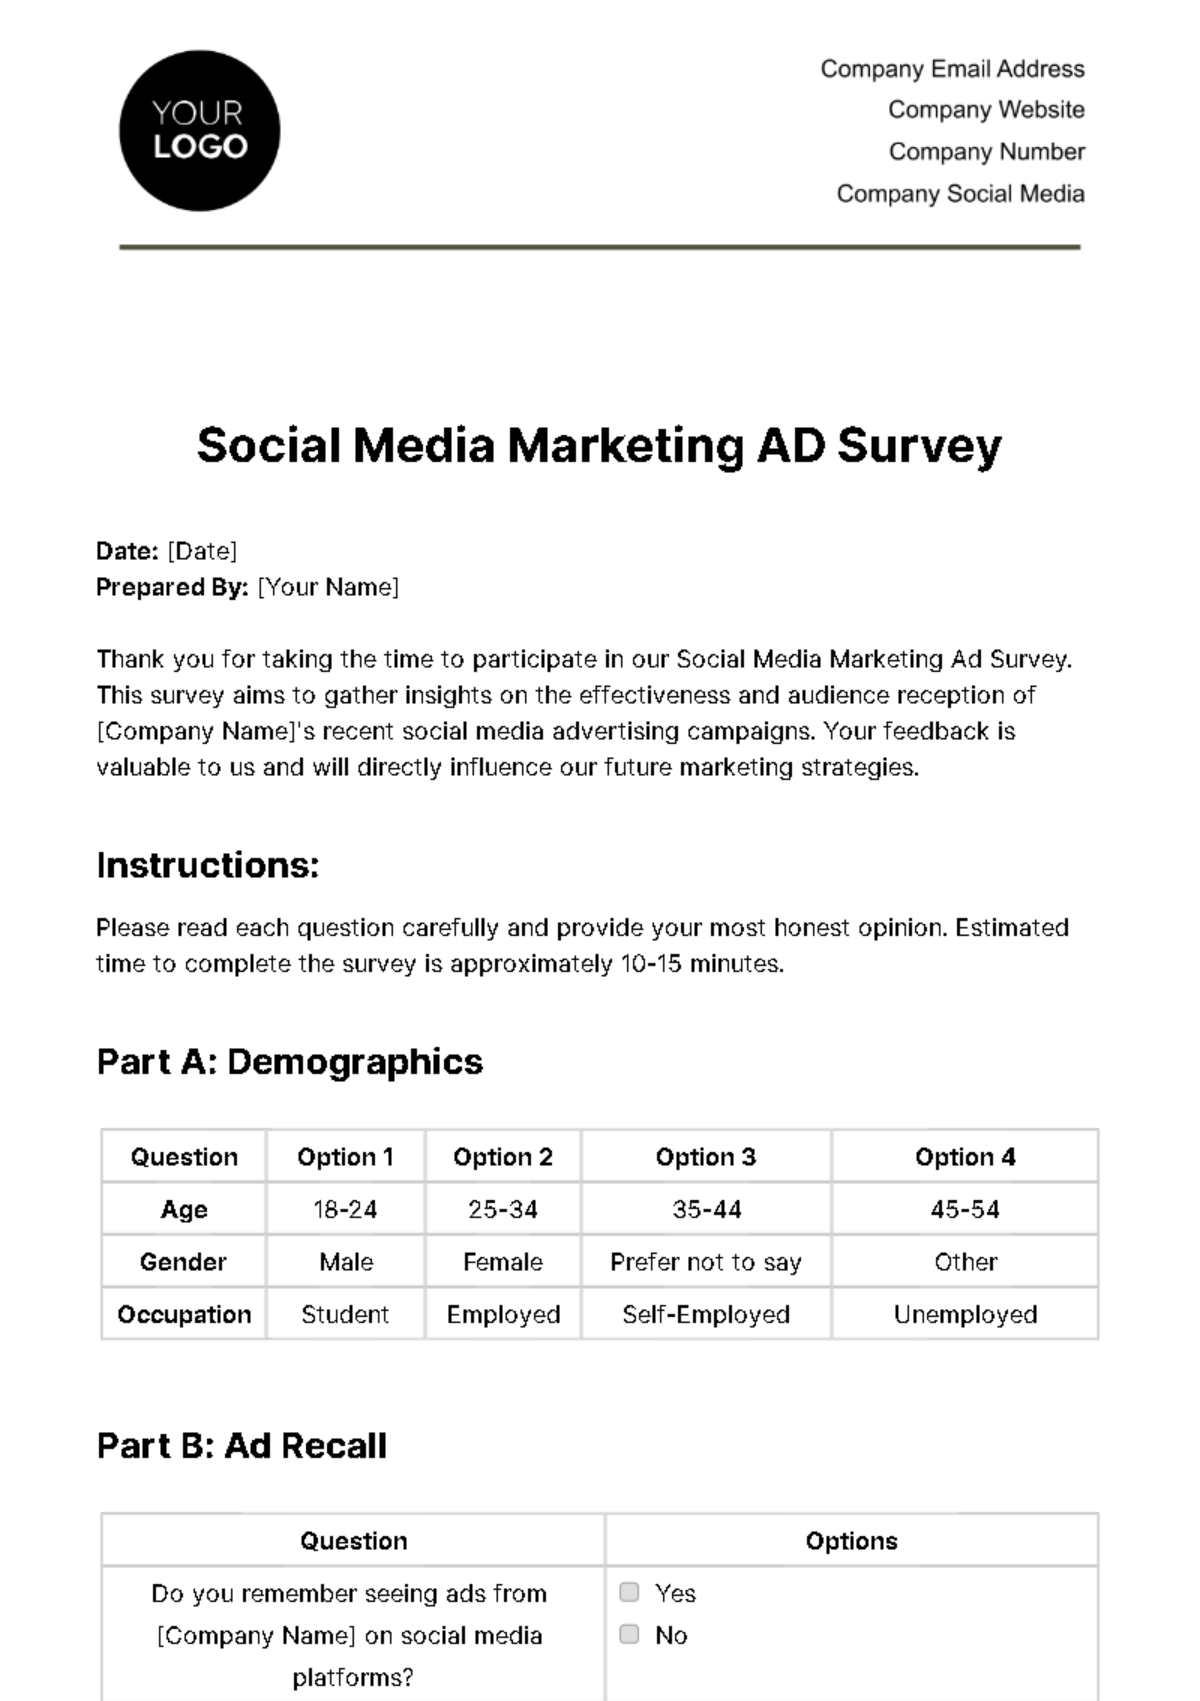 Social Media Marketing Ad Survey Template